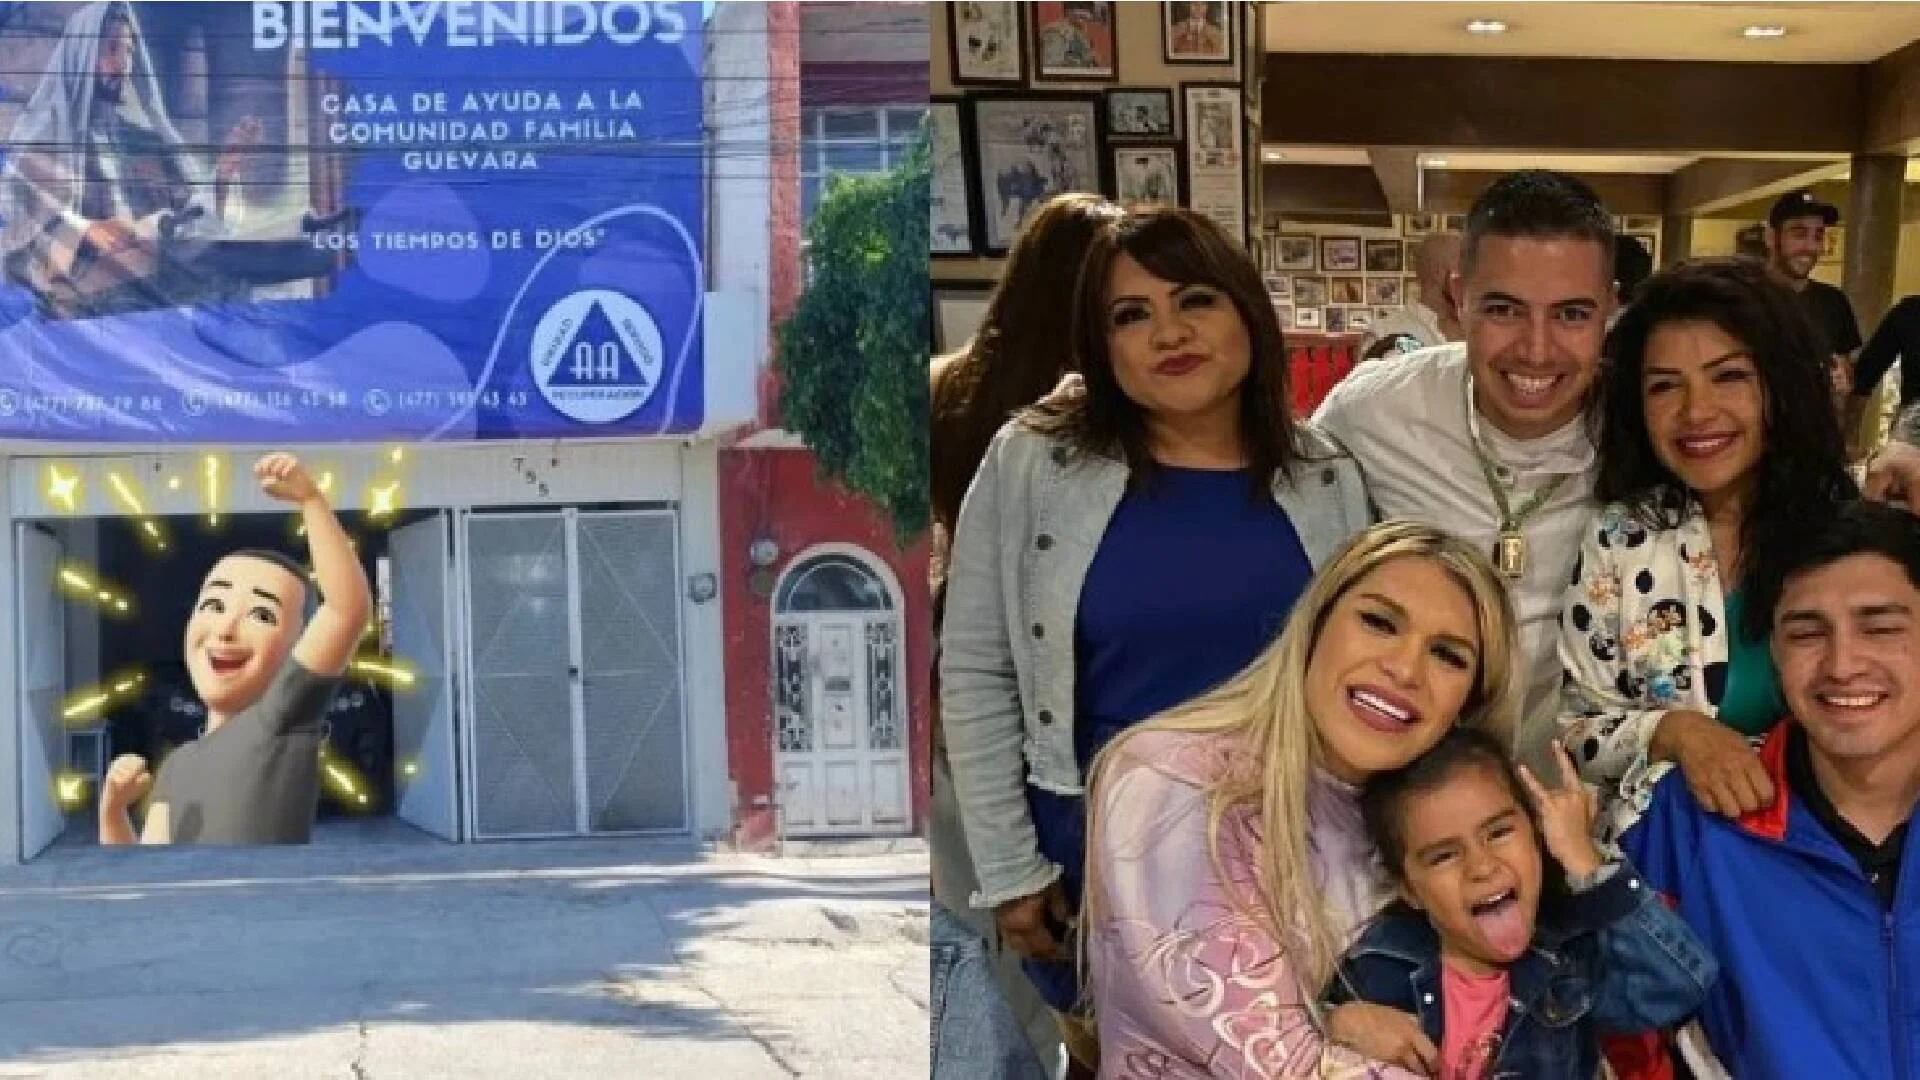 La familia Guevara apoyará a las personas que han caído en adicciones con su anexo ubicado en León, Guanajuato (Foto: Facebook)